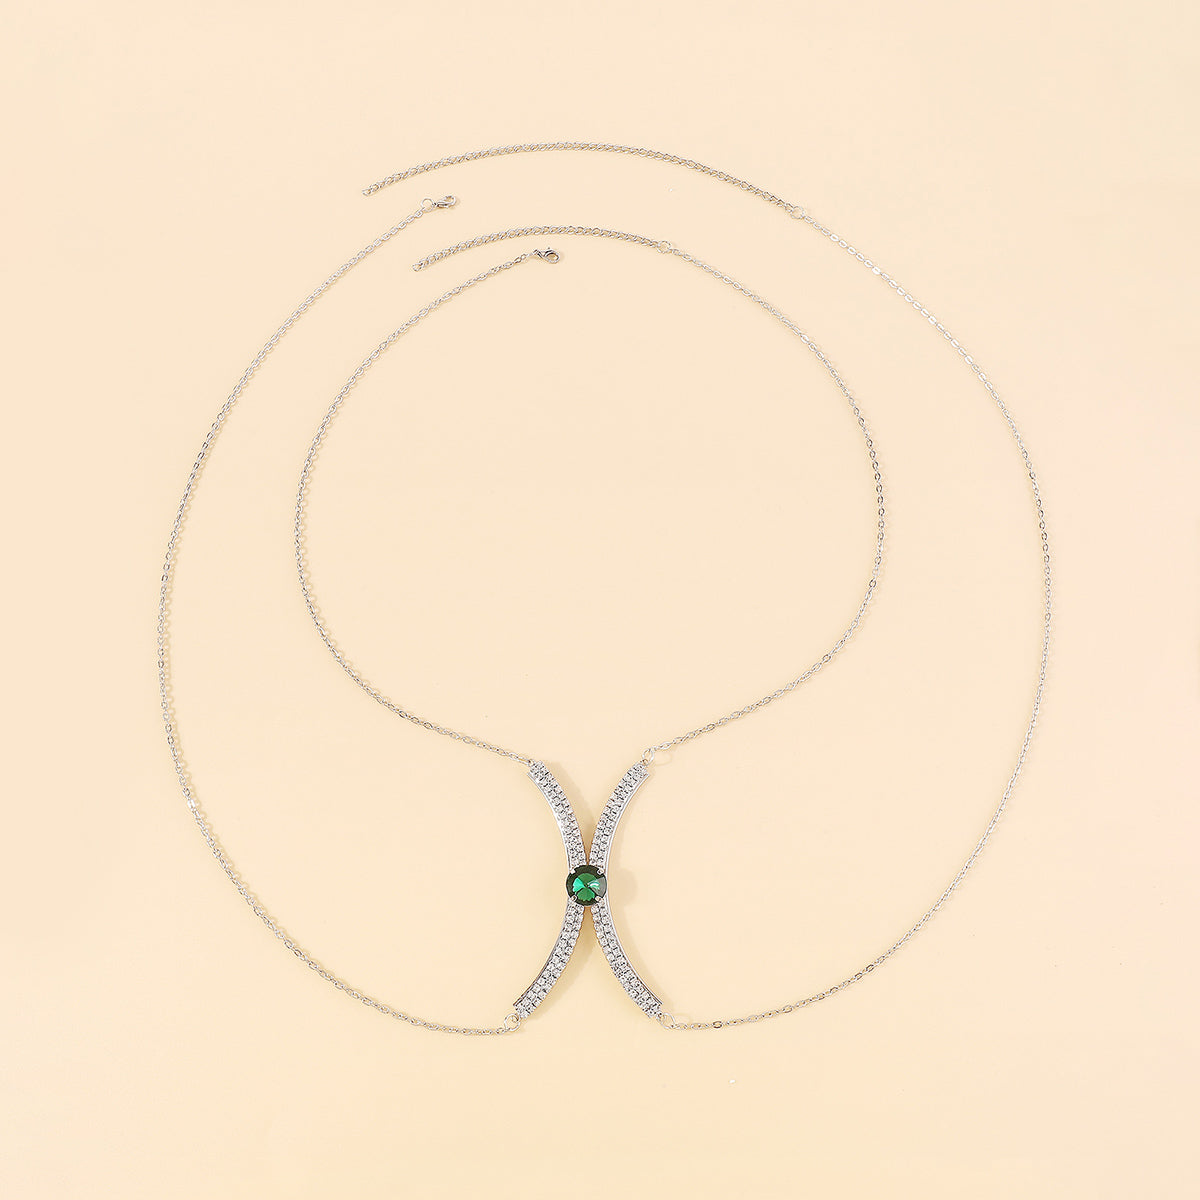 C0528 Luxury Sexy Green Crystal Body Chain Body Jewelry